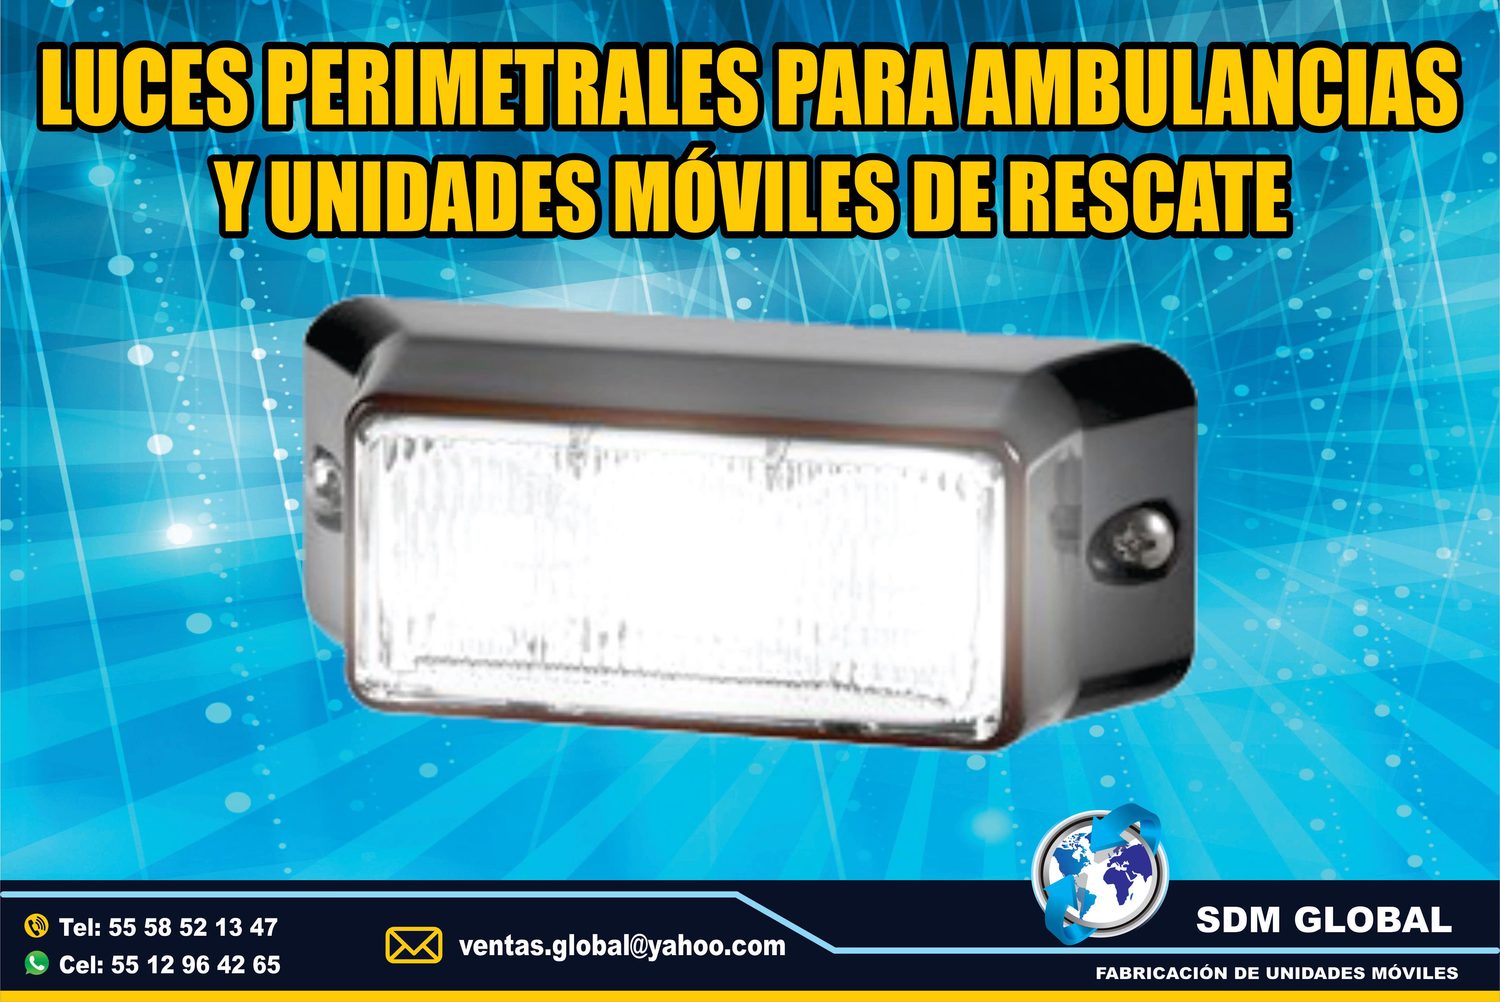 Venta de Luces Perimetrales para Ambulancias de Traslado Tipo I, II <br>